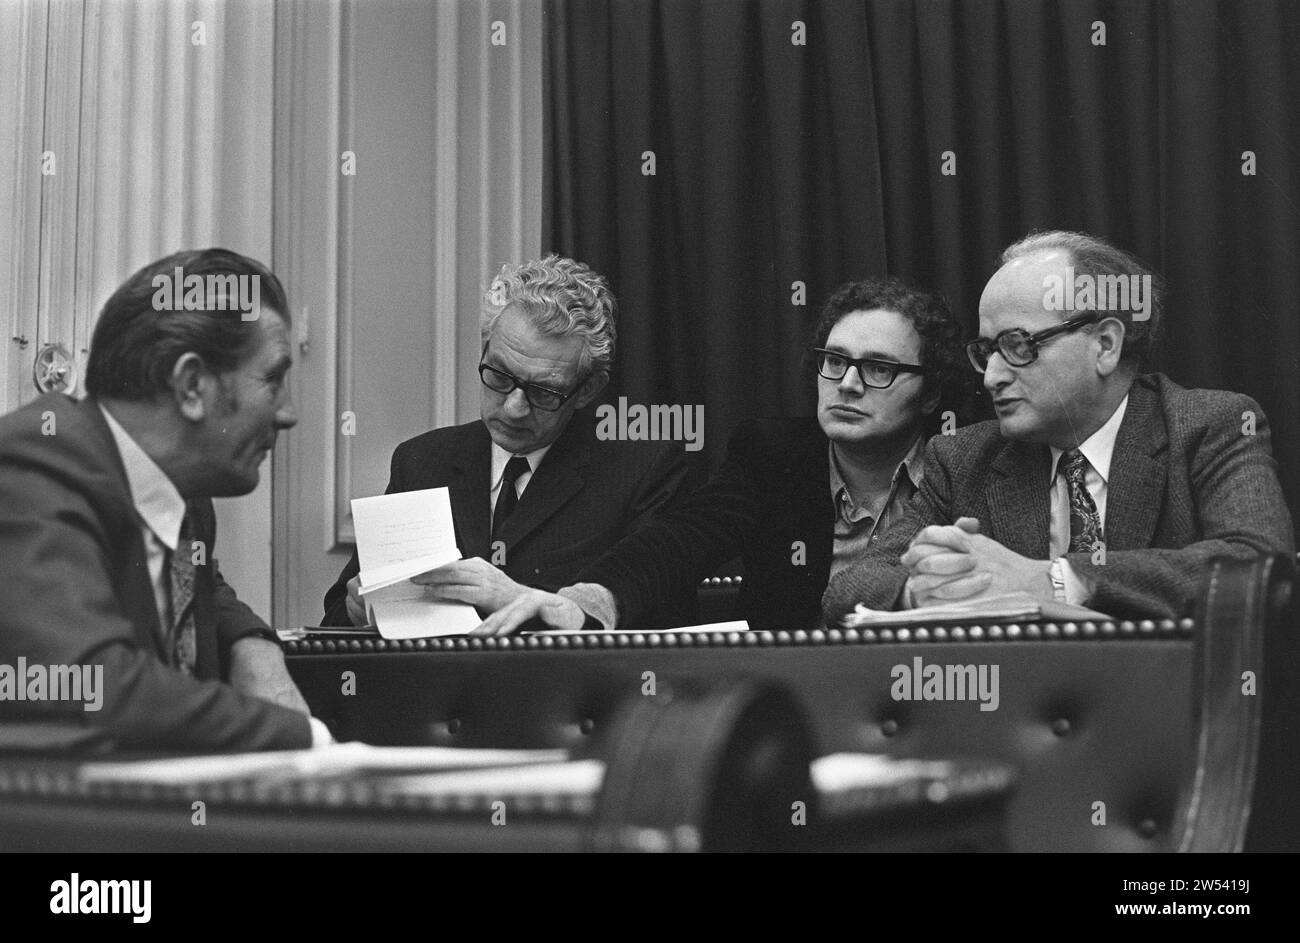 (Didascalia originale) dibattito interpellativo alla camera dei rappresentanti sulla guerra in Vietnam da sinistra a destra fra Meis, M. Bakker, A. de Leeuw, J. F. Wolf CA. 20 dicembre 1972 Foto Stock